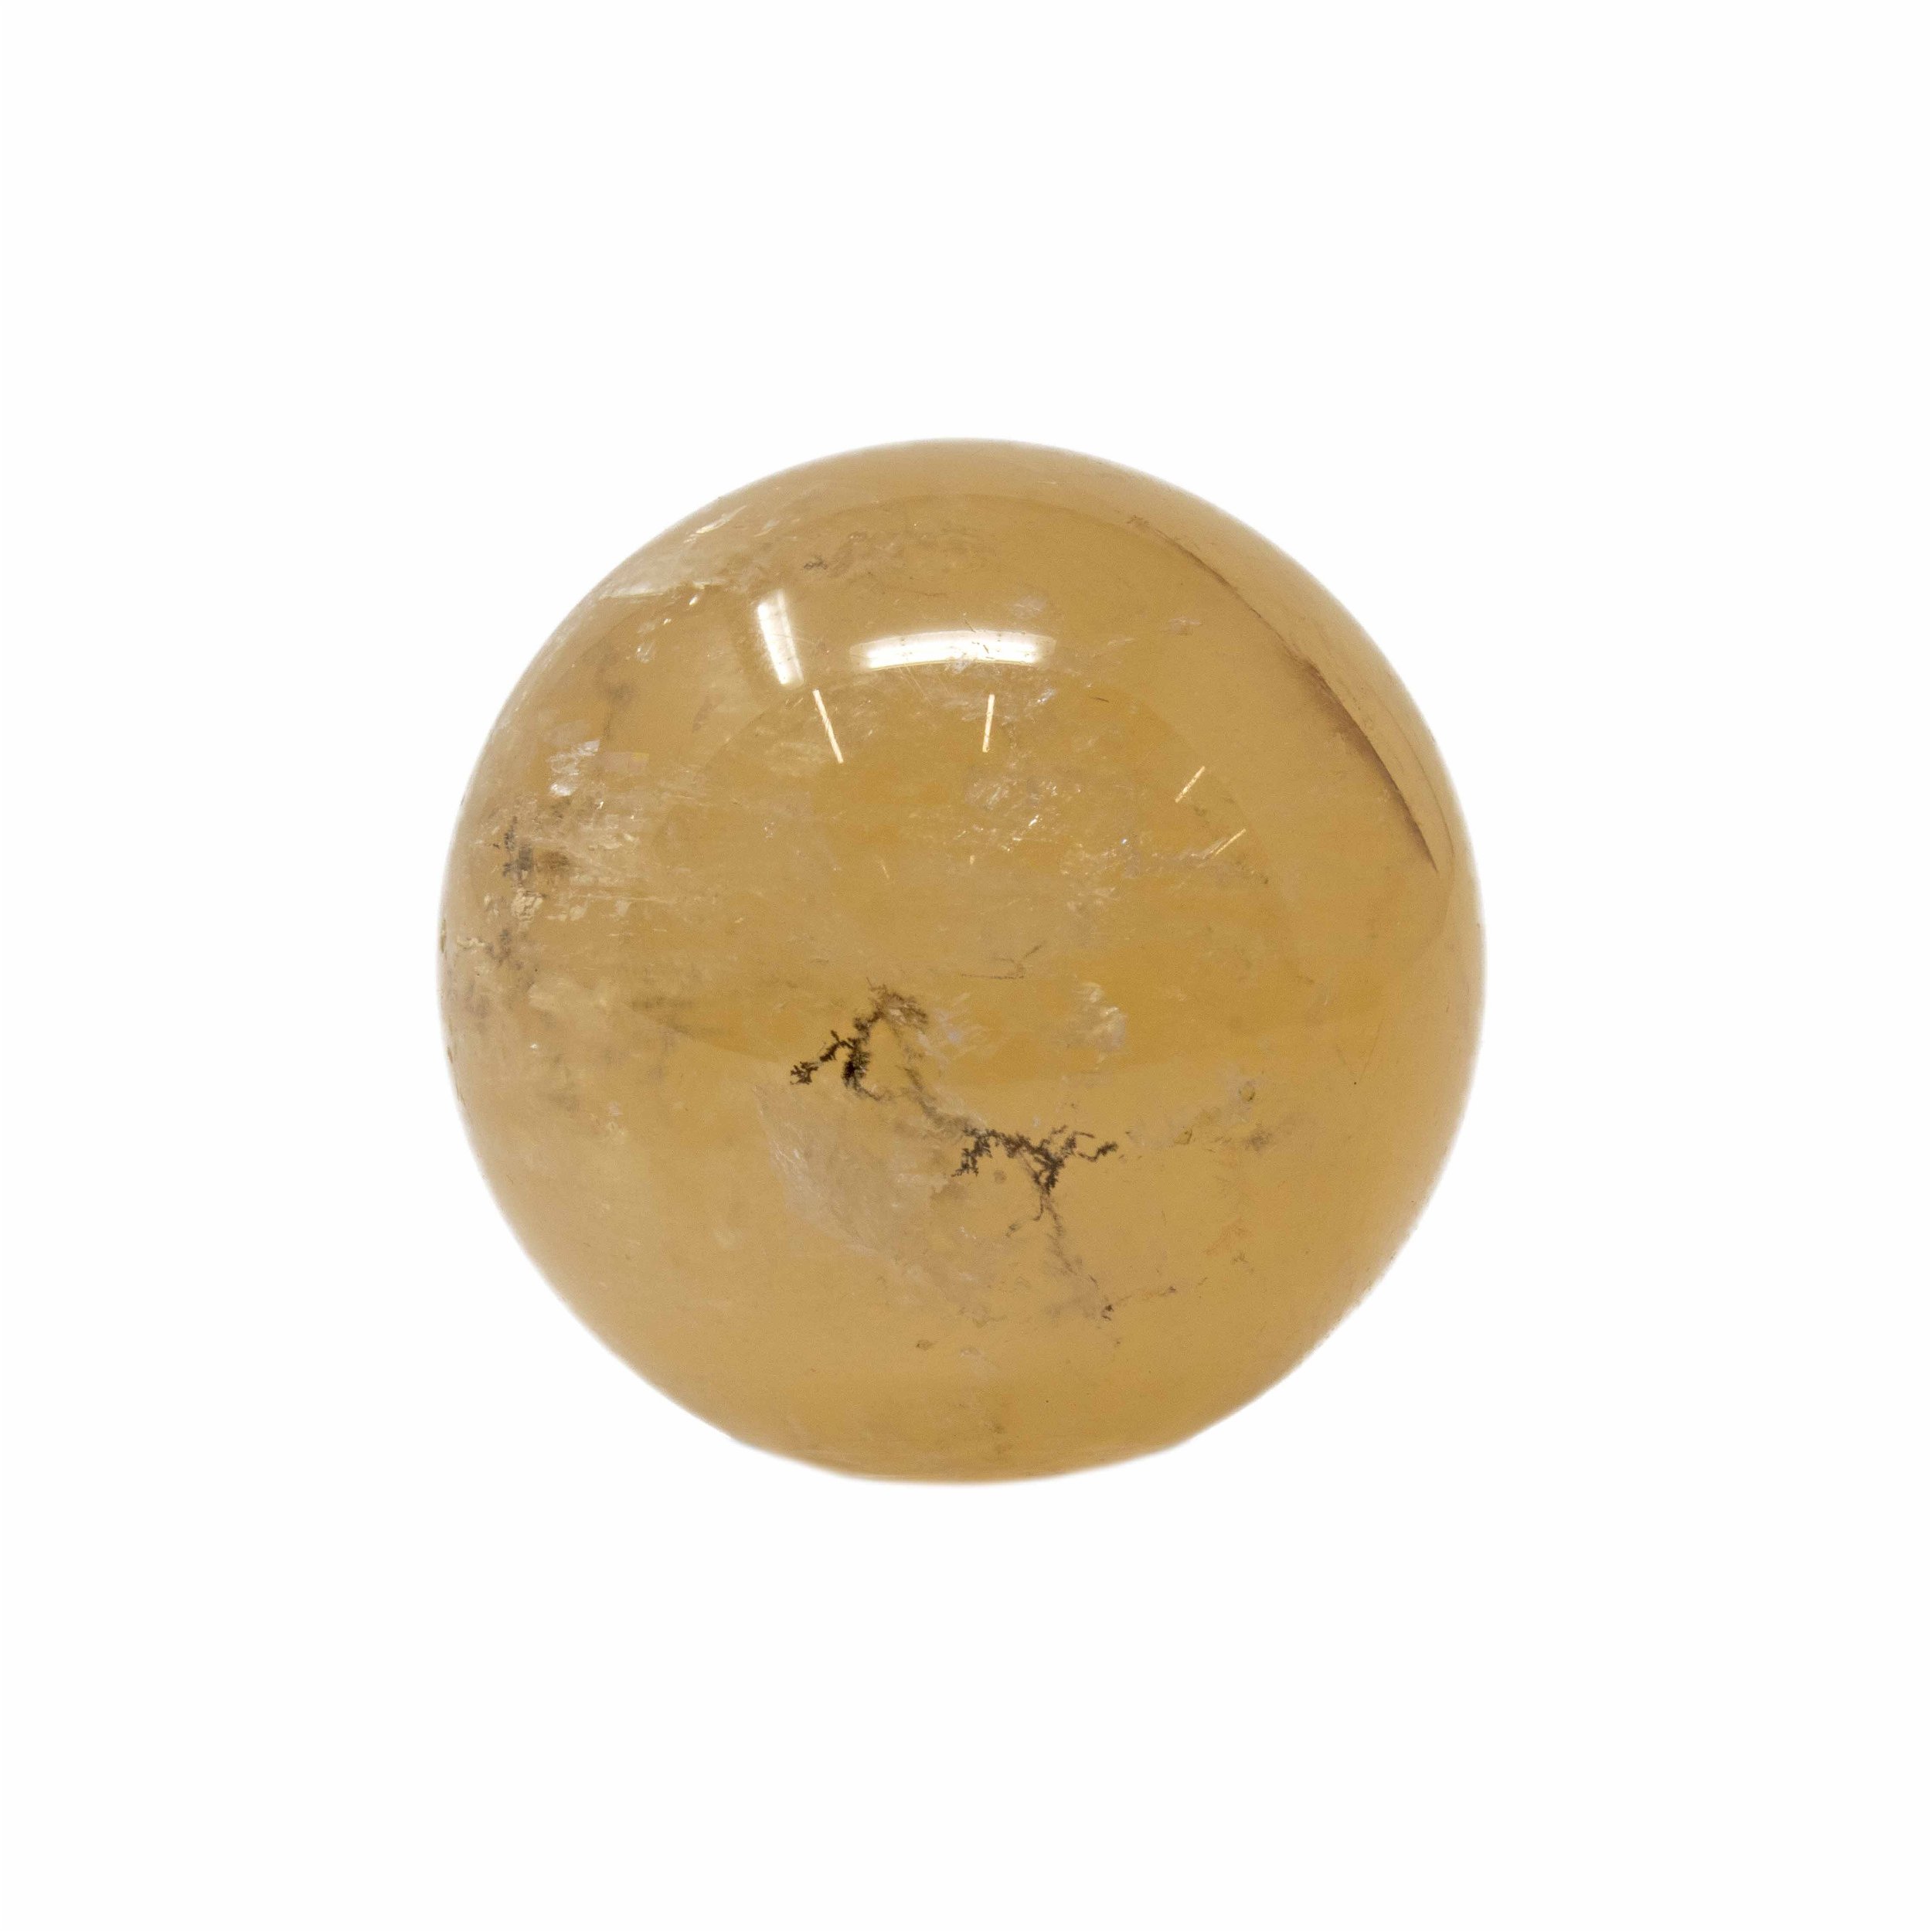 Golden Calcite Sphere - Flecks Of Dendrite